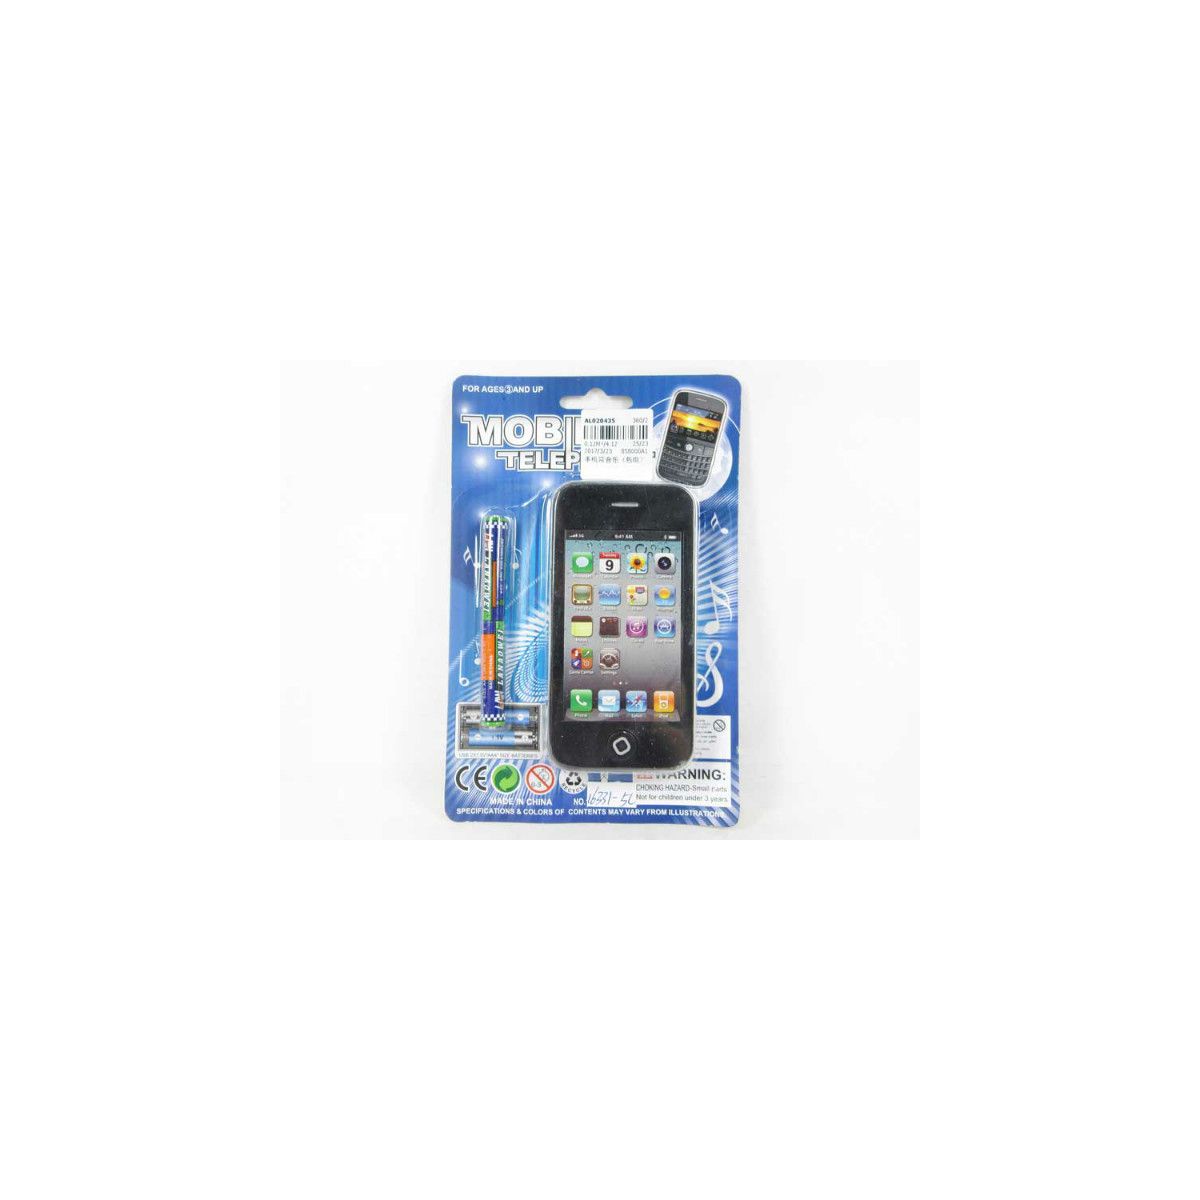 Telefon zabawkowy smartfon z dźwiękiem Bigtoys (BTEL6948)